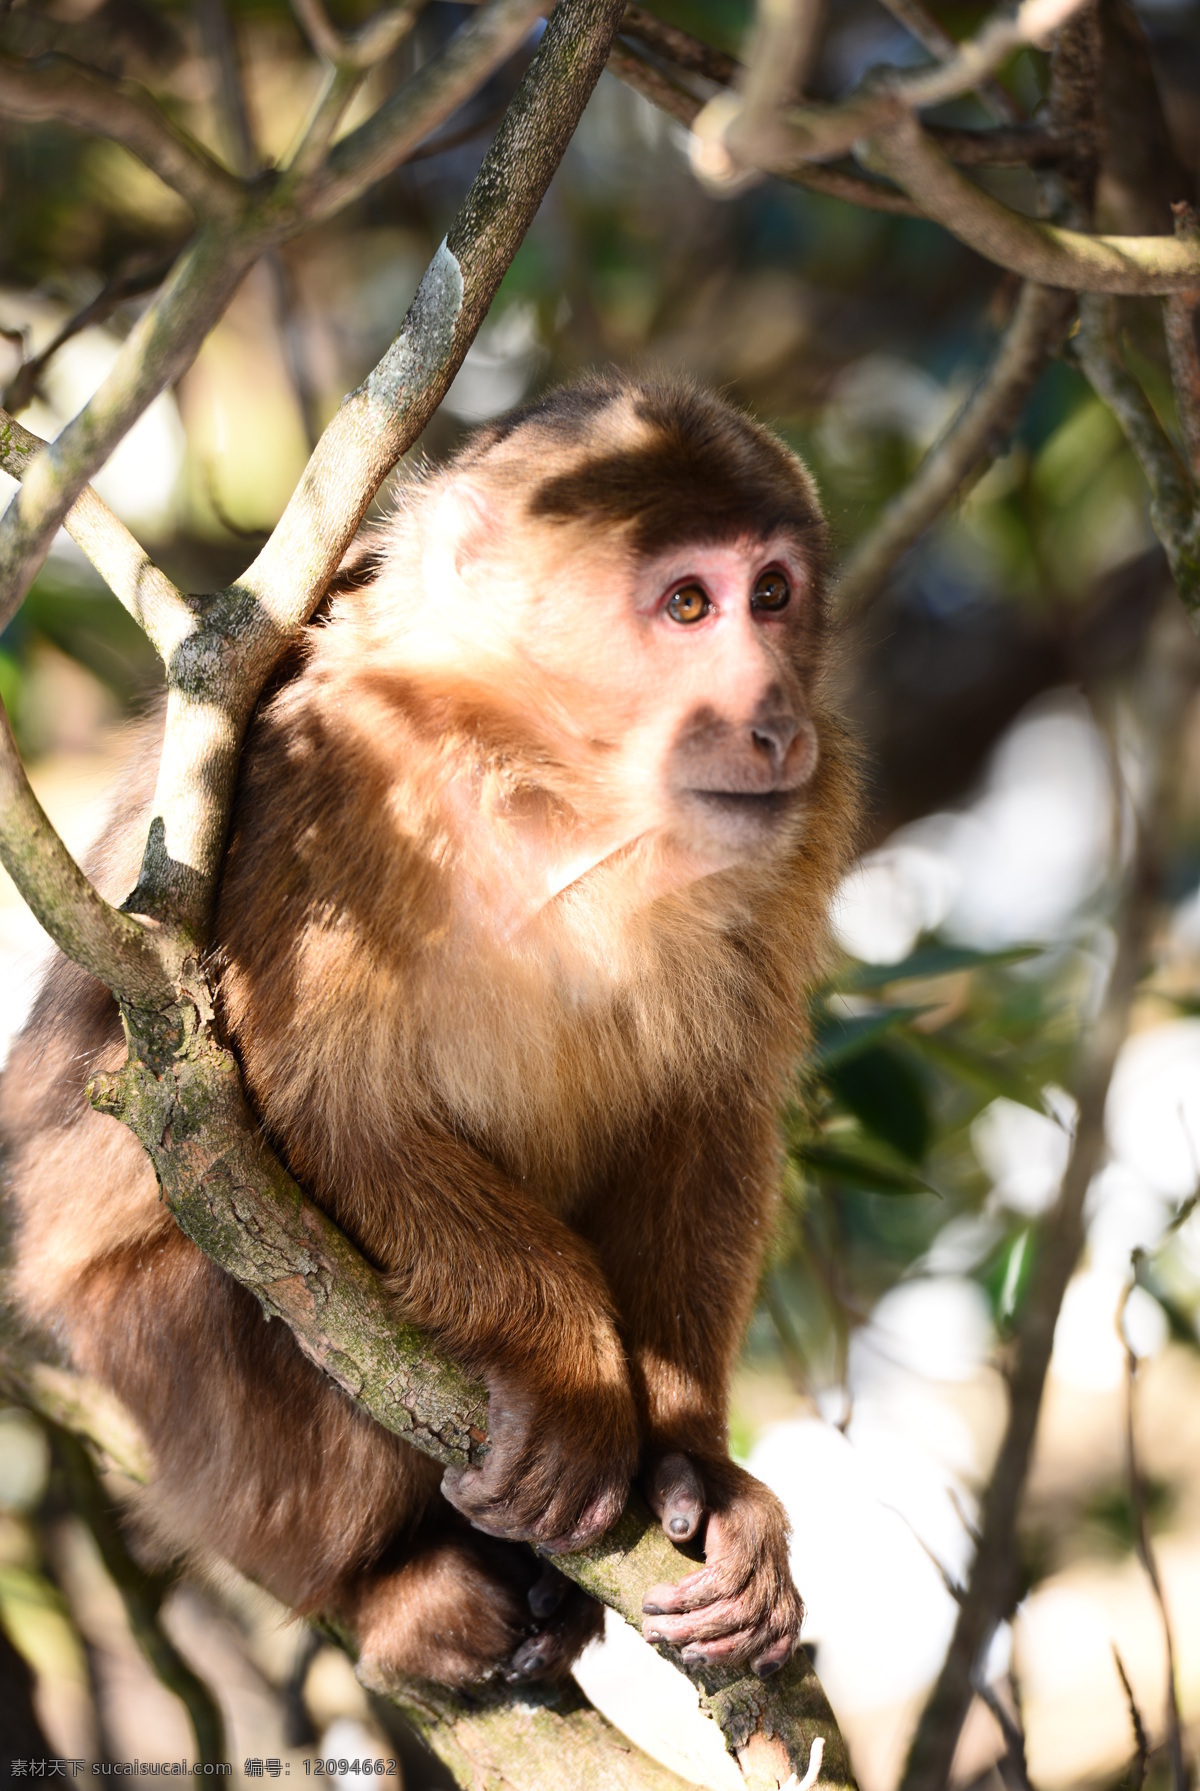 观望的猴子 猴子 观看 自然风景 动物 山里的猴子 树上的猴子 野生动物 生物世界